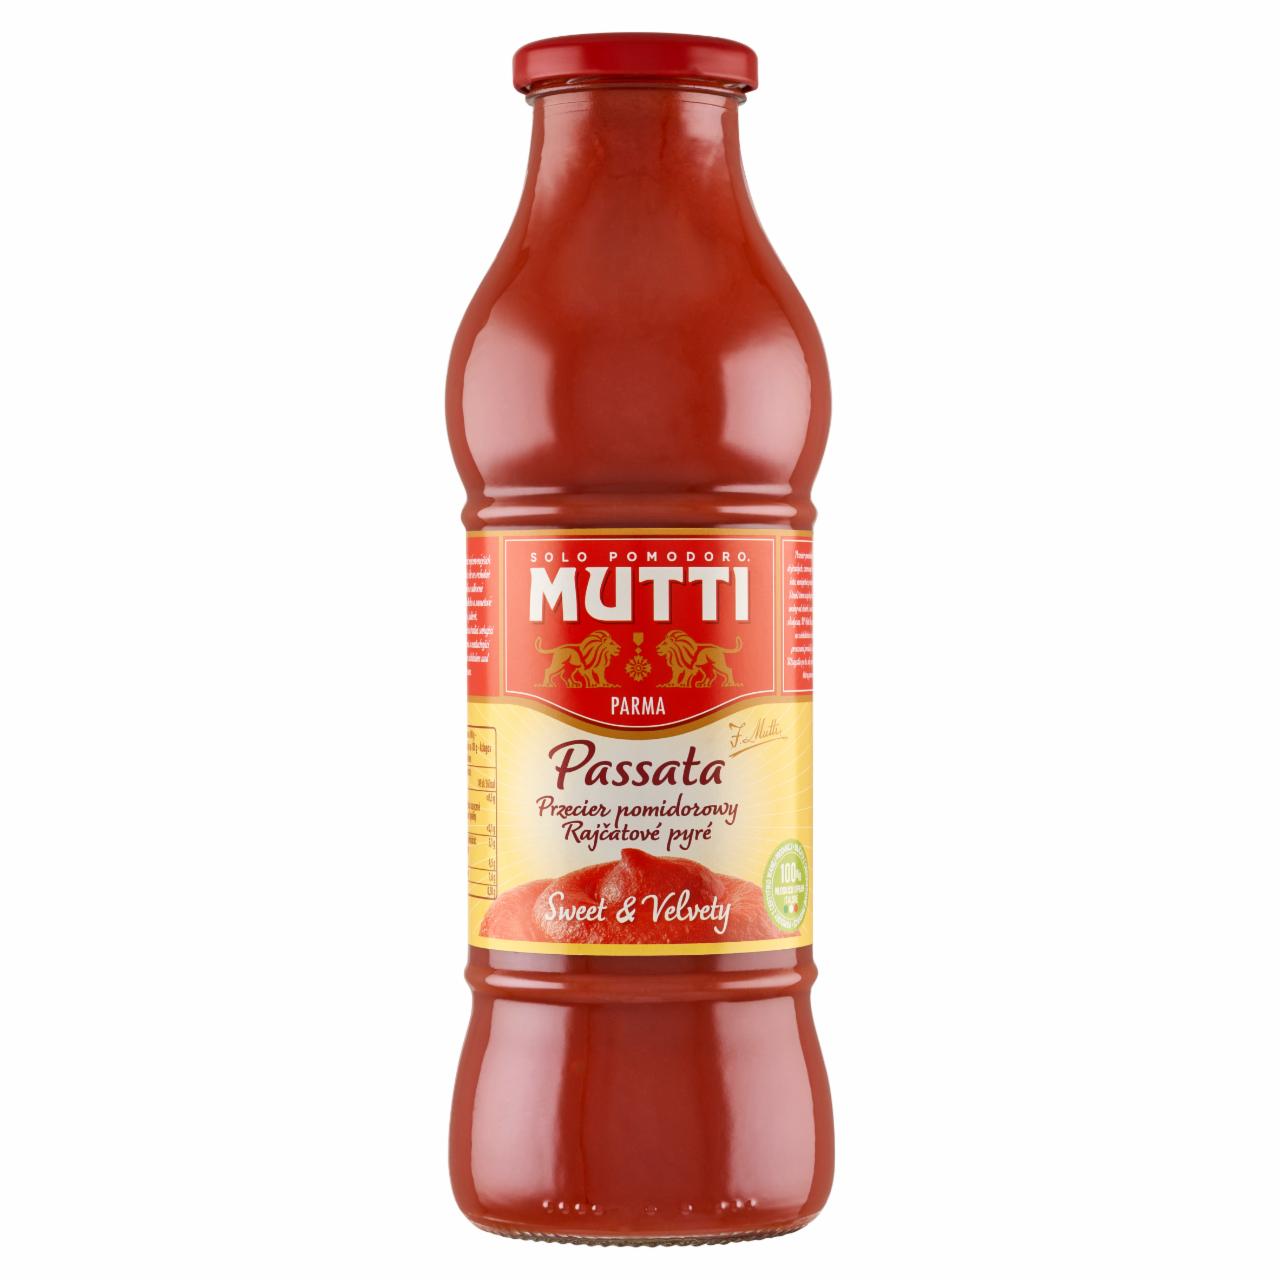 Zdjęcia - Mutti Passata przecier pomidorowy 700 g